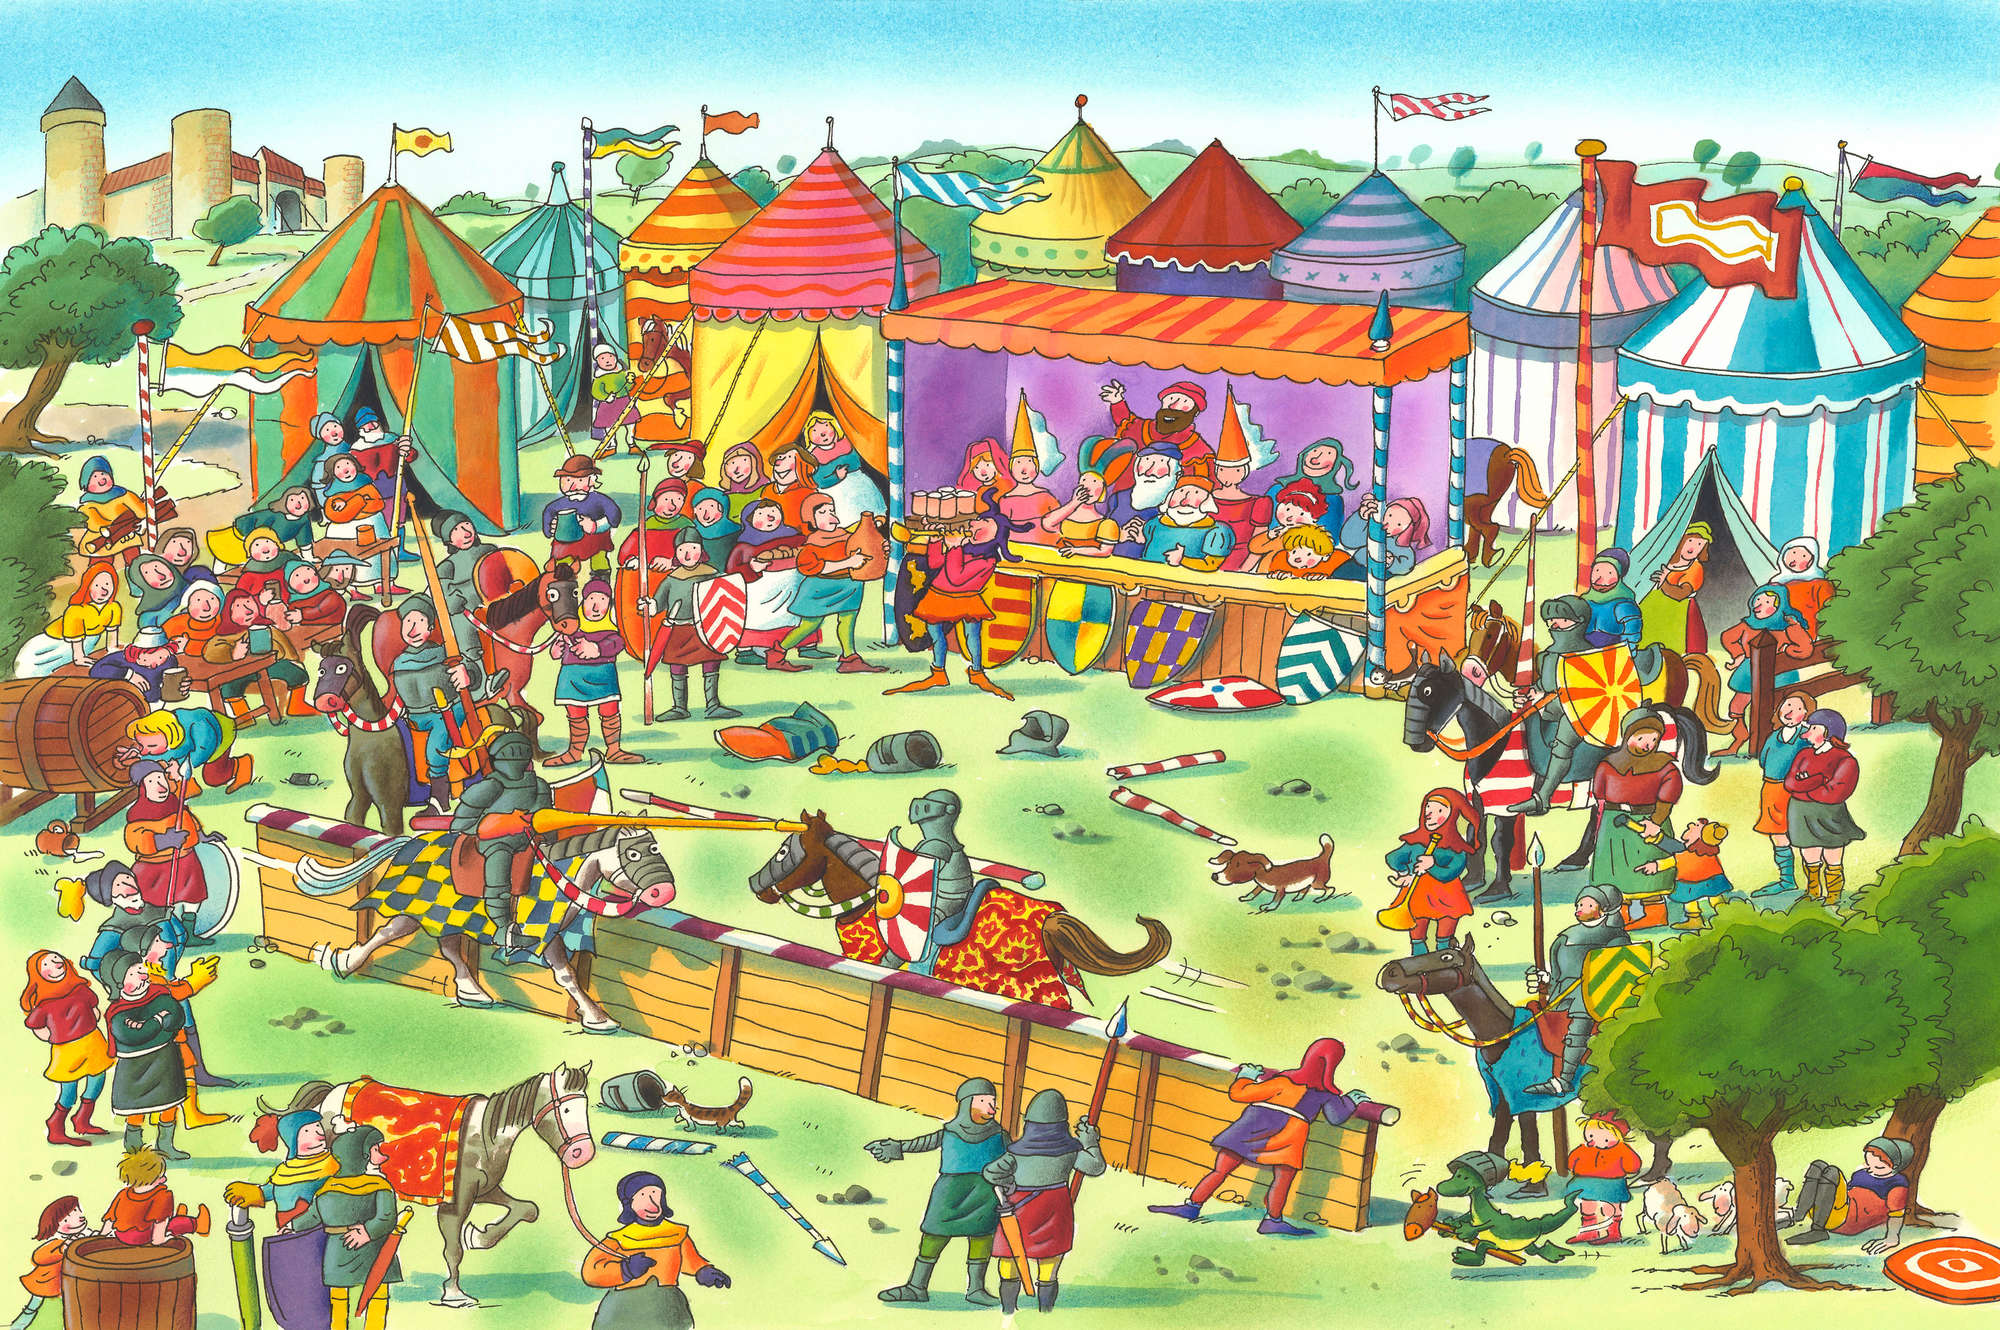             Papier peint panoramique enfants fête des chevaliers avec festival bleu et jaune sur intissé lisse premium
        